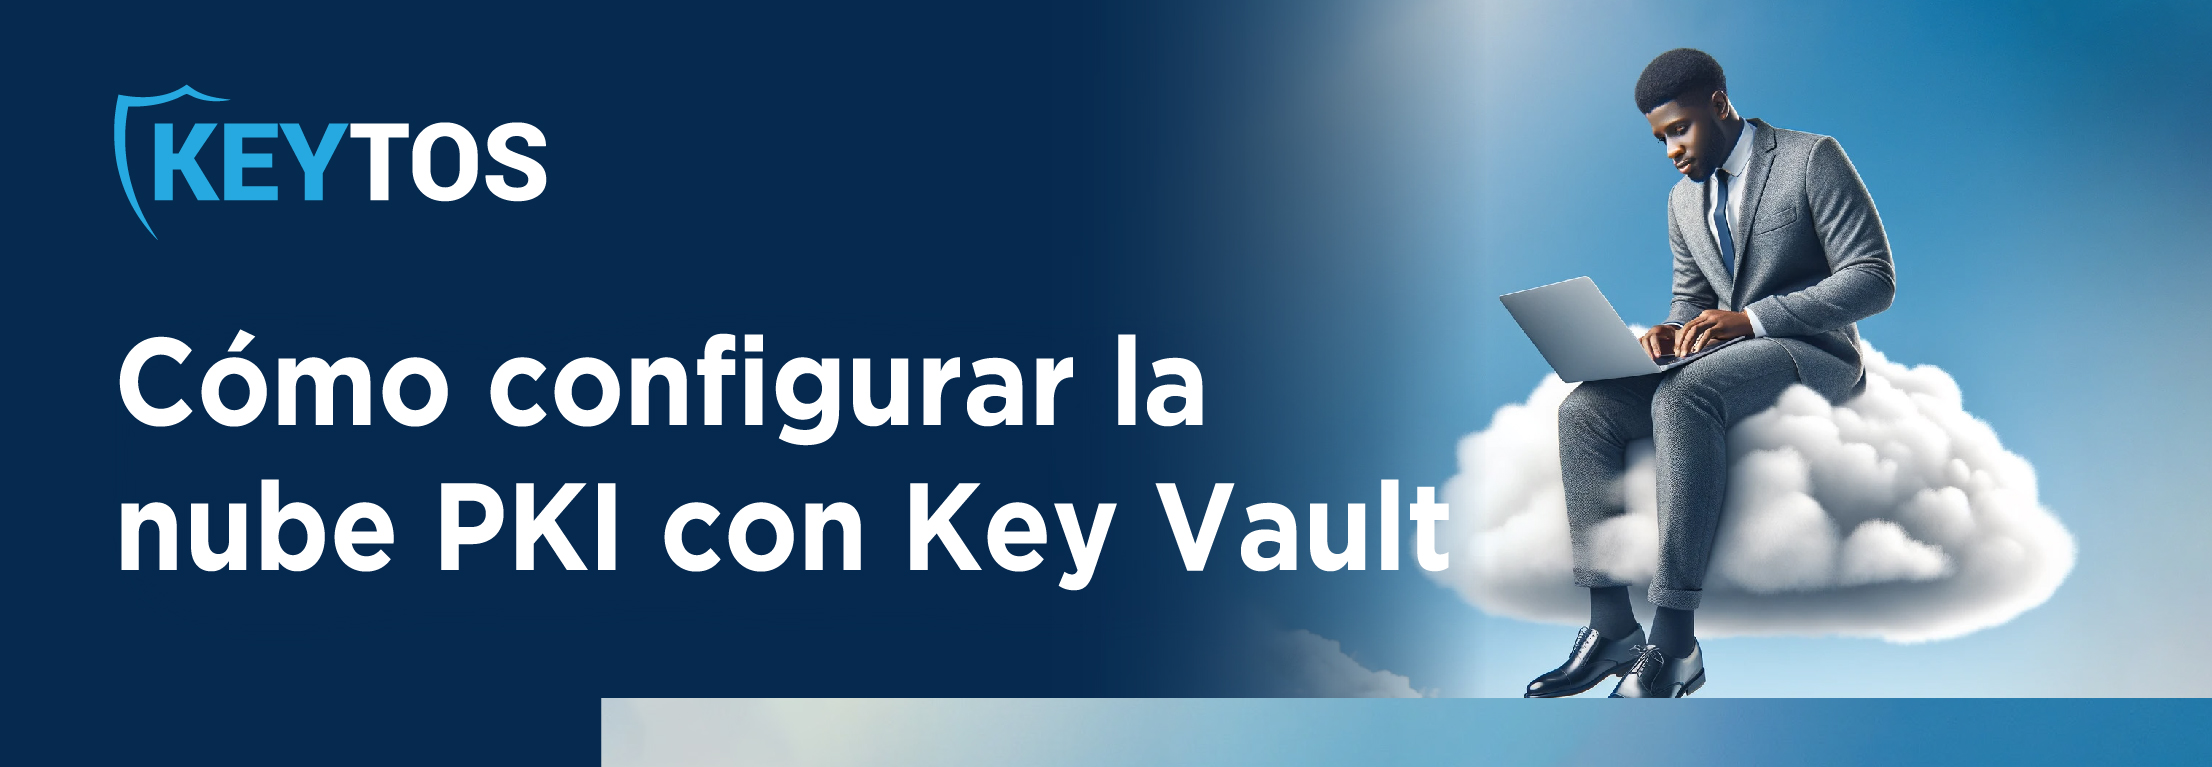 HSMs de claves de Azure PKI en la nube. ADCS en Azure cómo proteger sus claves privadas con Azure Key Vault o HSM dedicado.